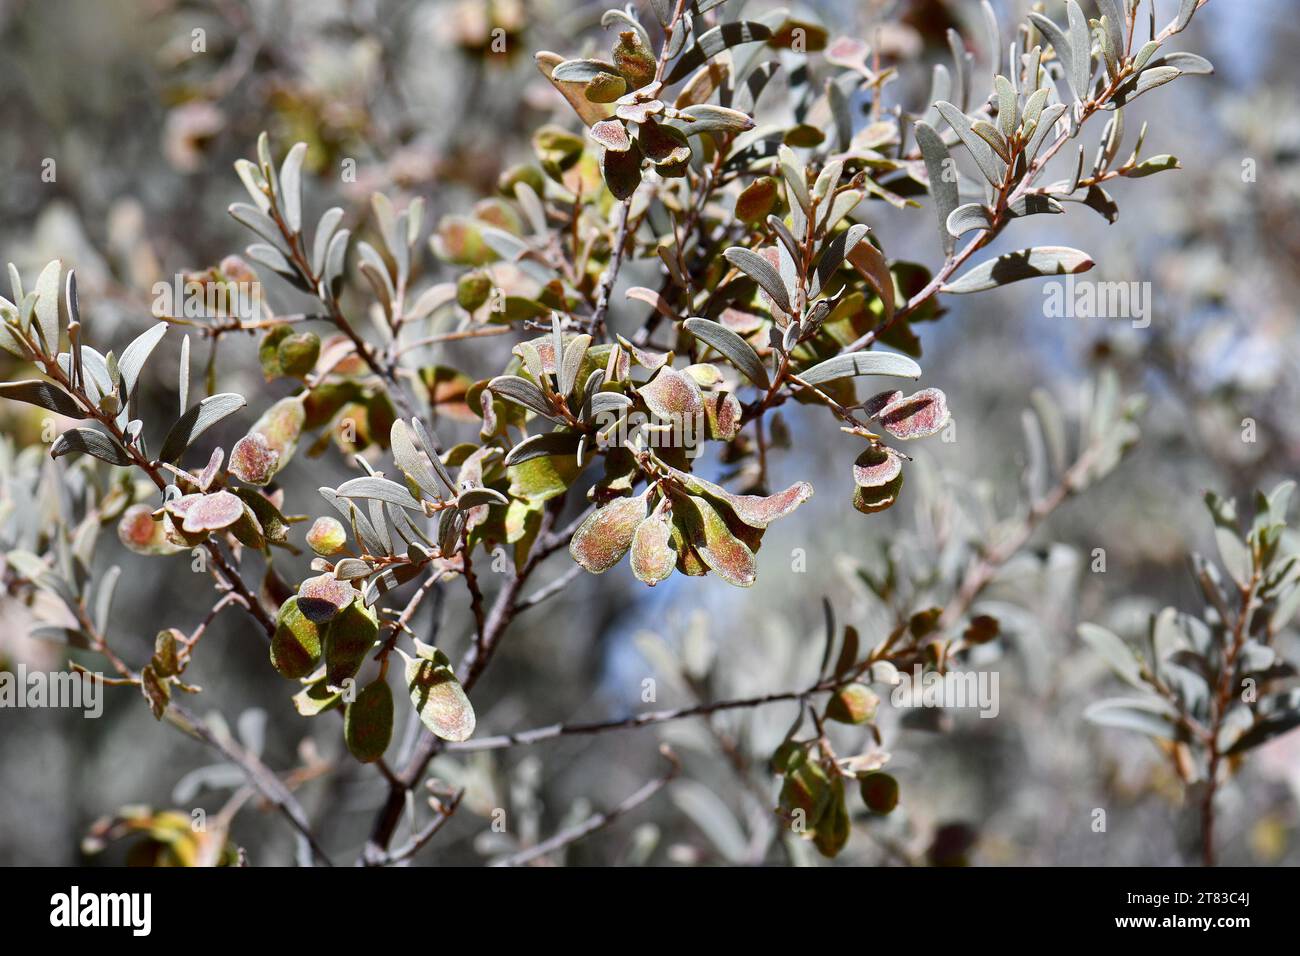 Gousses et phyllodes de graines de l'espèce australienne Desert Mulga Wattle Acacia minyura, famille des Fabaceae. Endémique aux sols sablonneux et aux dunes des terres arides Banque D'Images